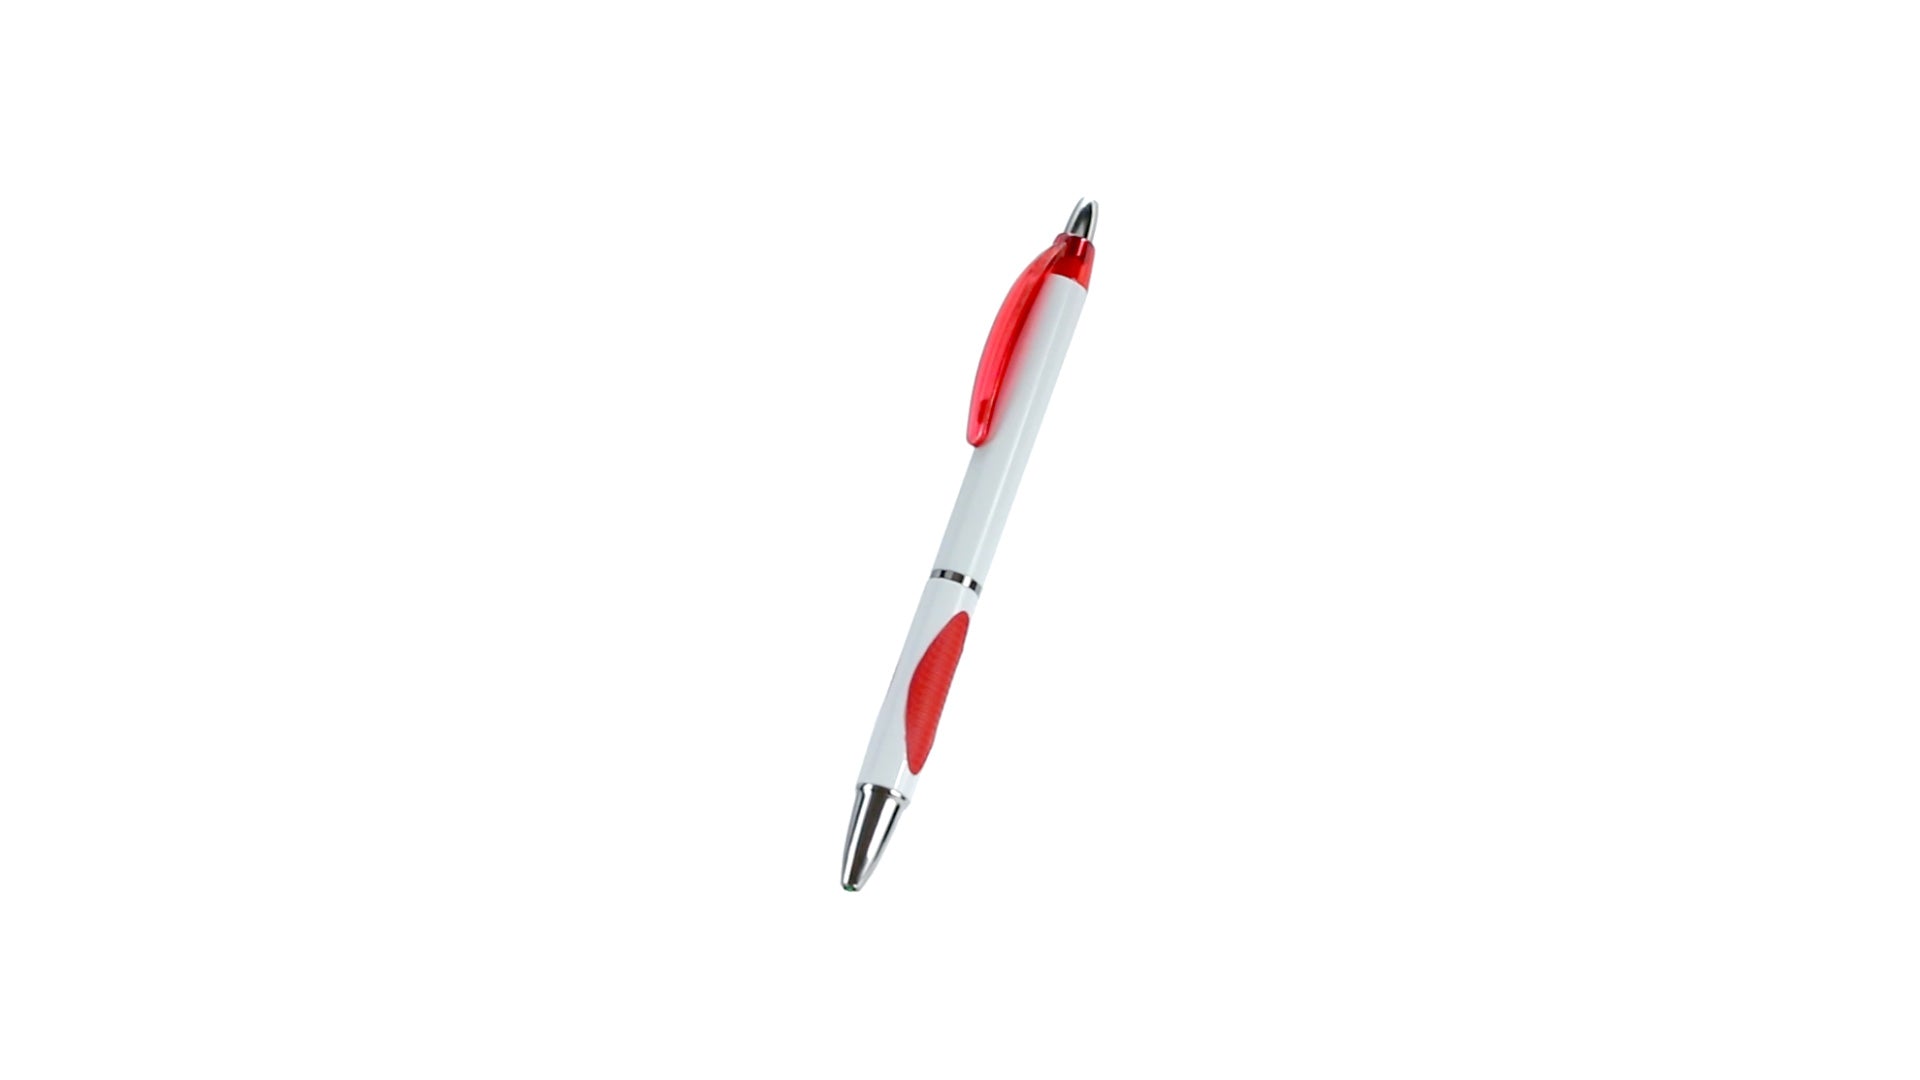 stylo vite avec Attributs de couleur translucide, offrant un aspect unique et sophistiqué.